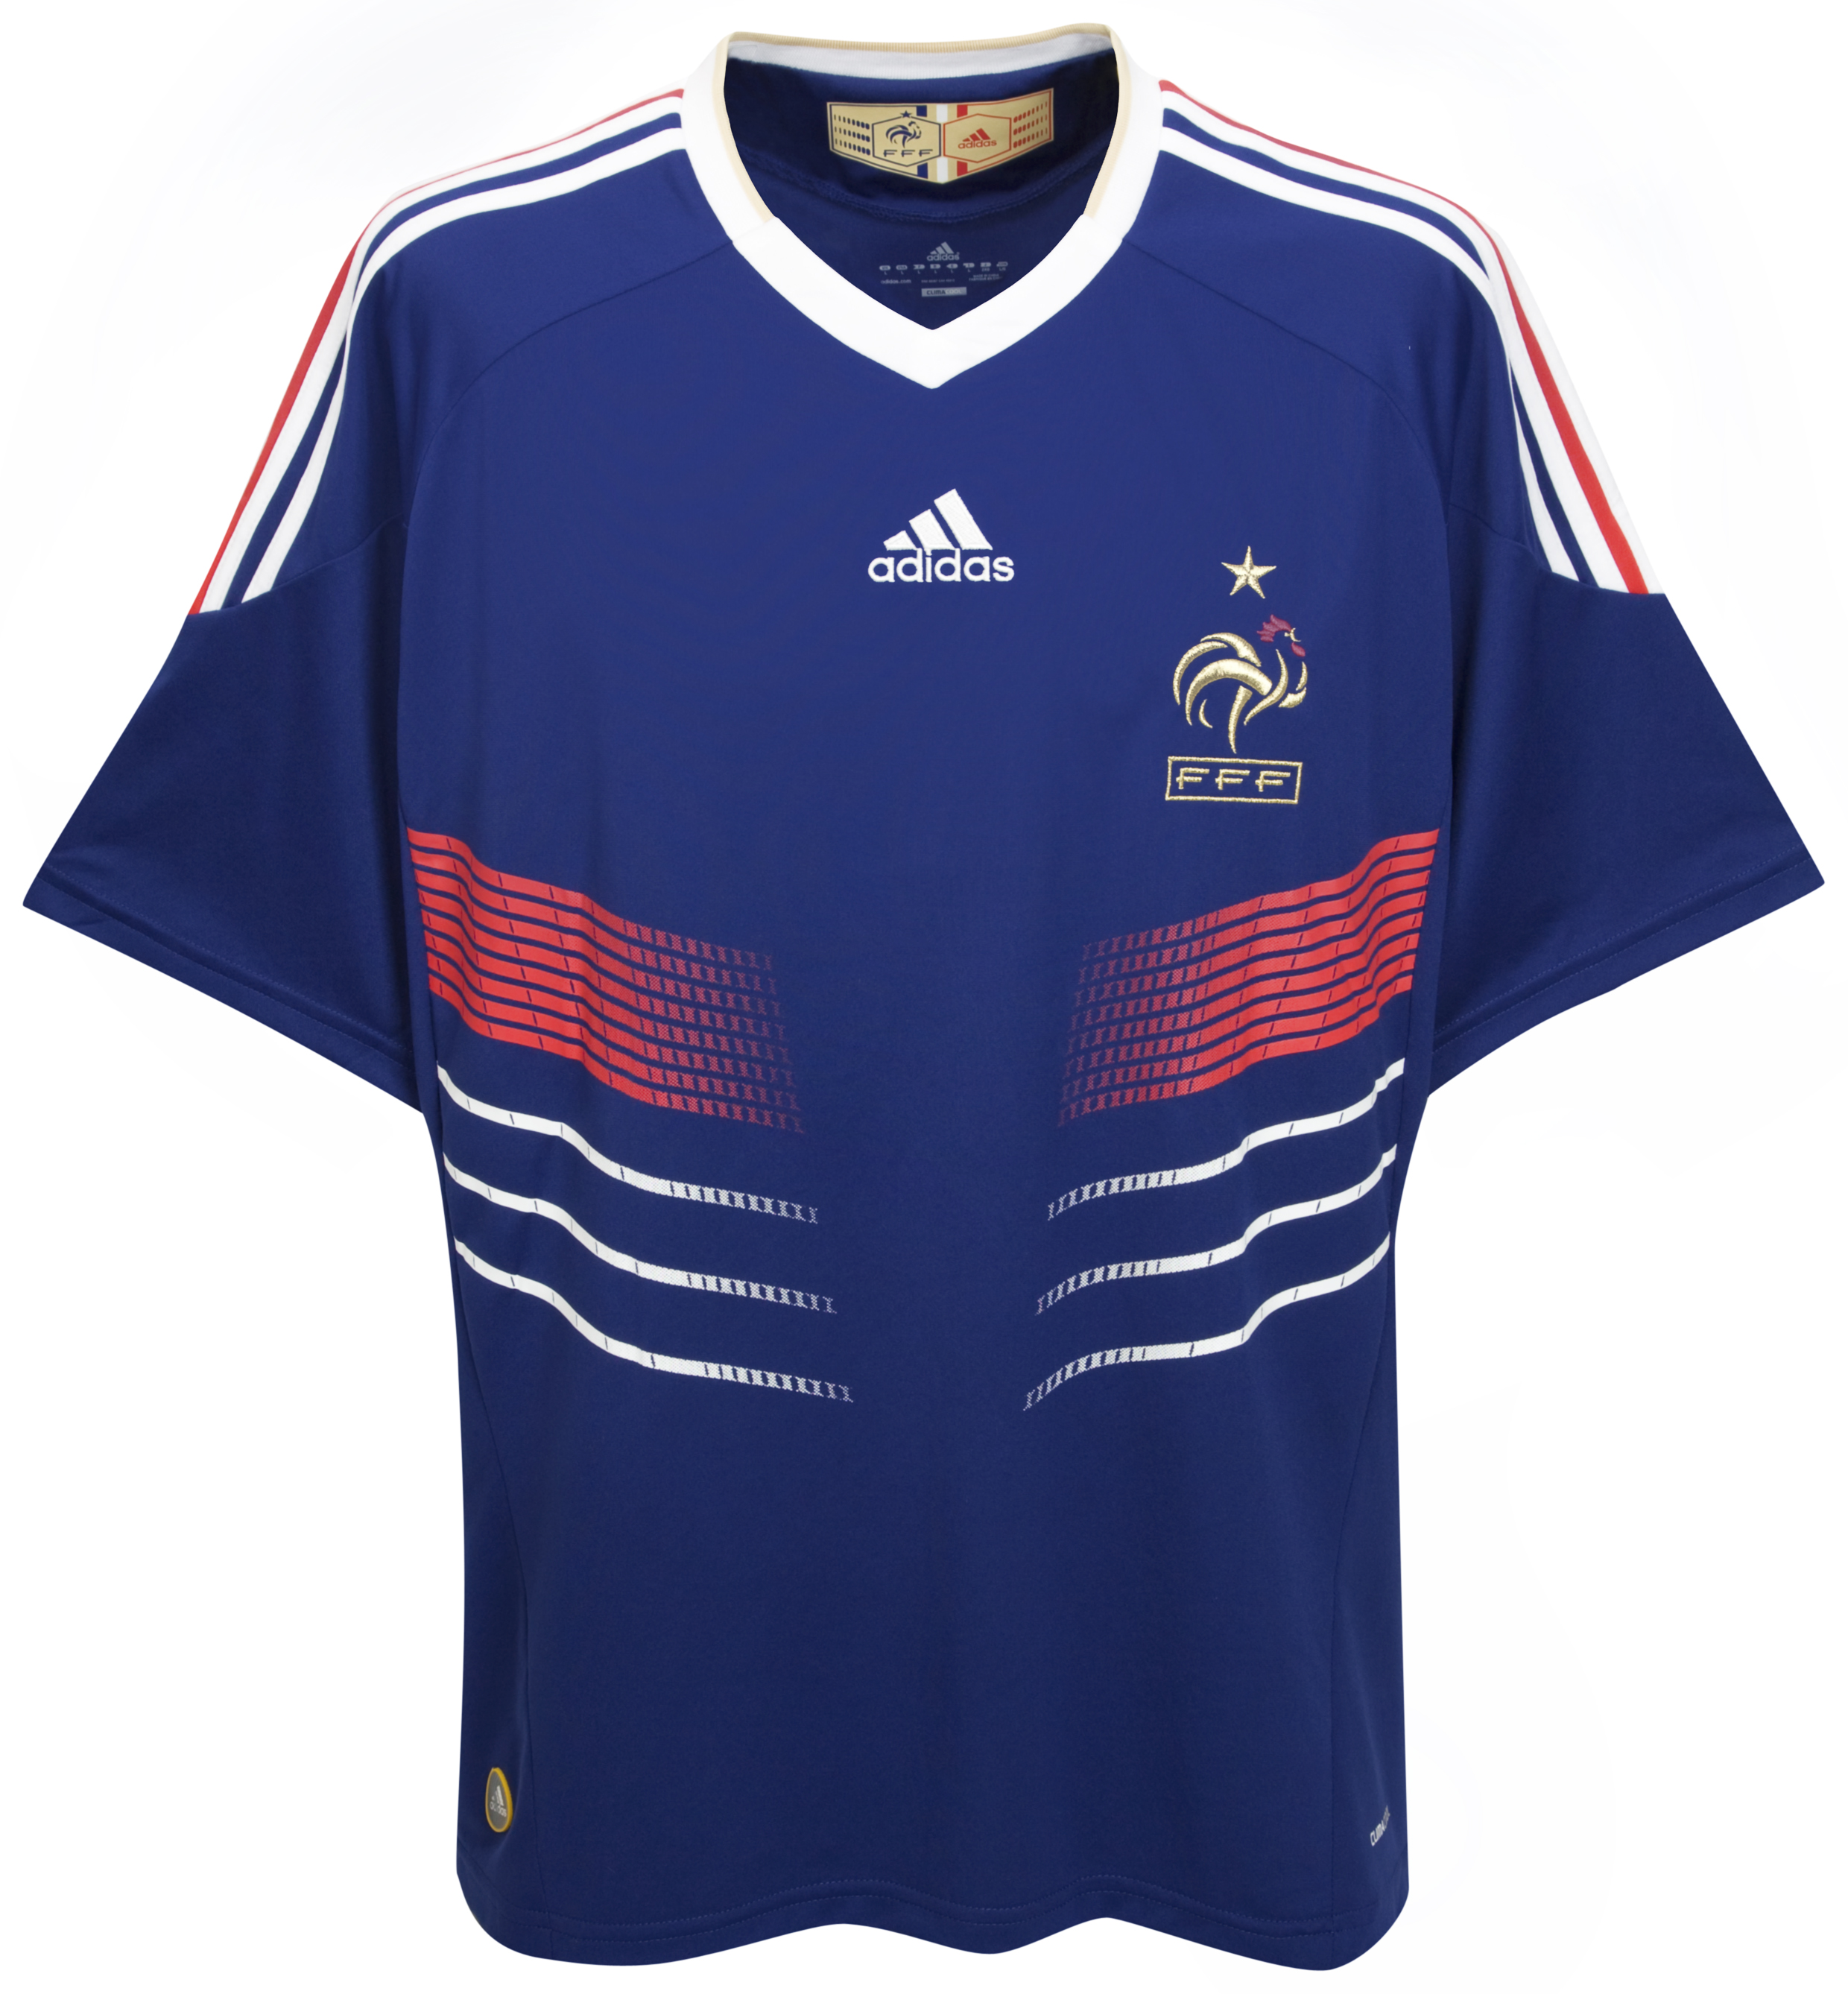 الملابس الرسمية لكأس العالم 2010 Cfc-63740